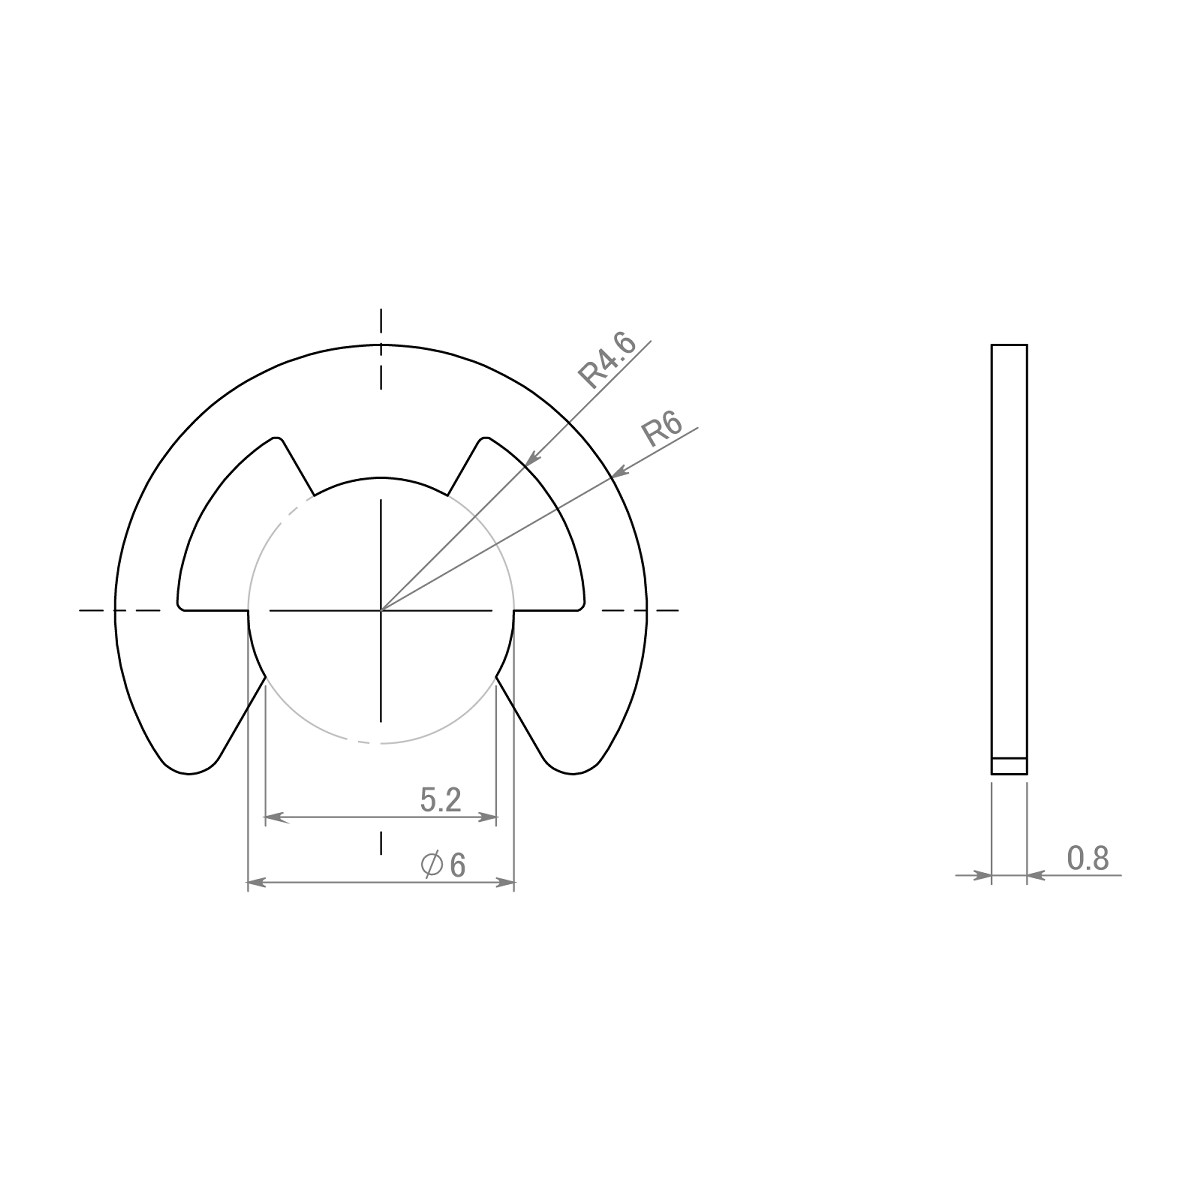 セイミツ工業製ジョイスティックレバー用 E形留め輪(Eリング) 呼び径6Φ (2個) 【SR-E-P6】